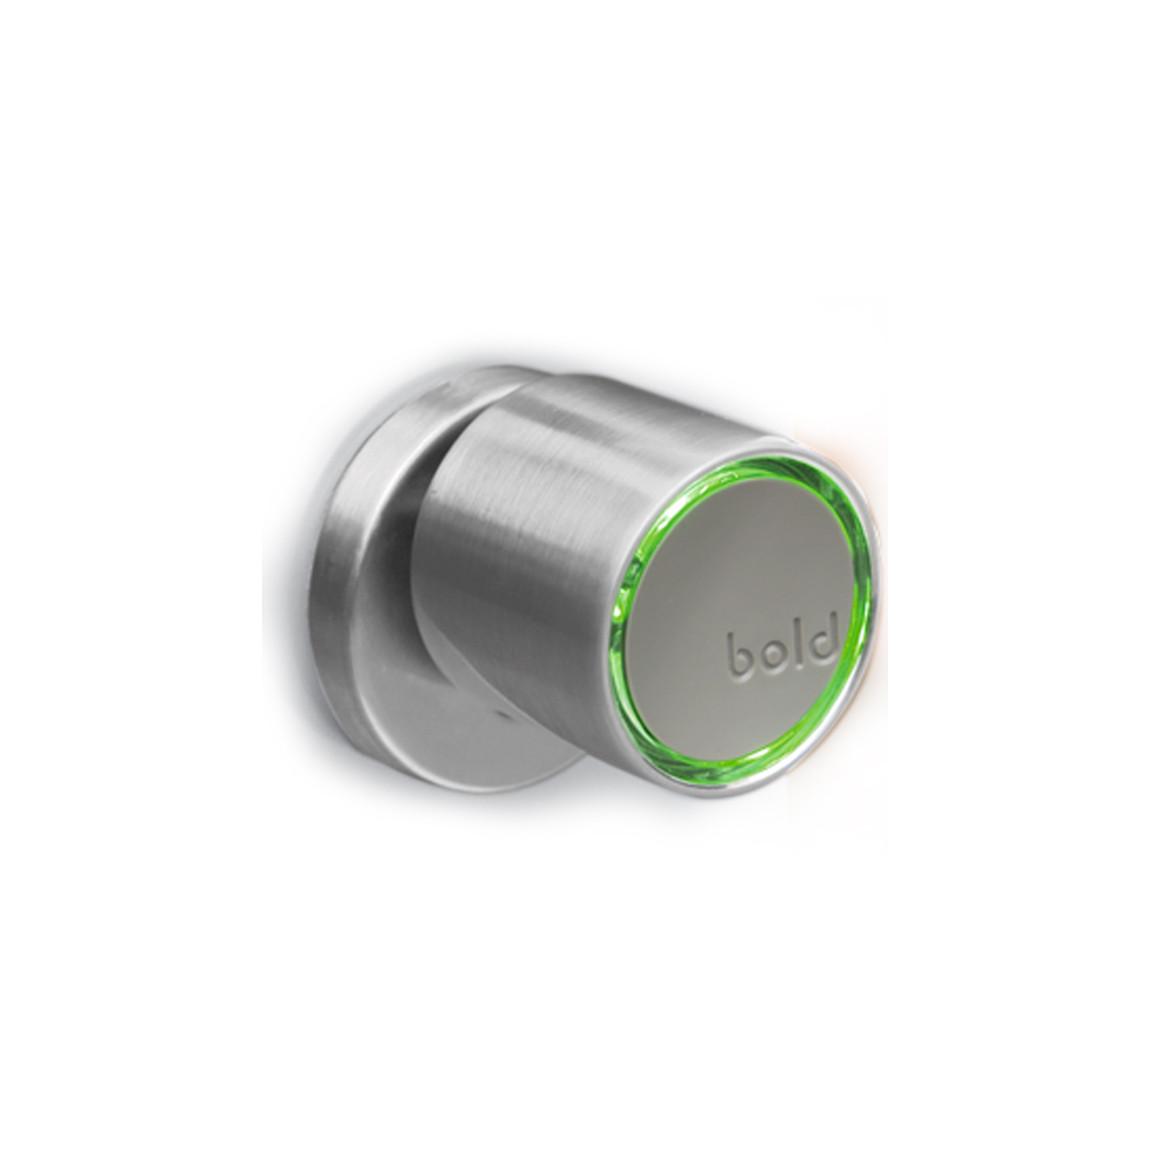 Bold Smart Lock SX-33 - Smartes Zylinderschloss - Silber